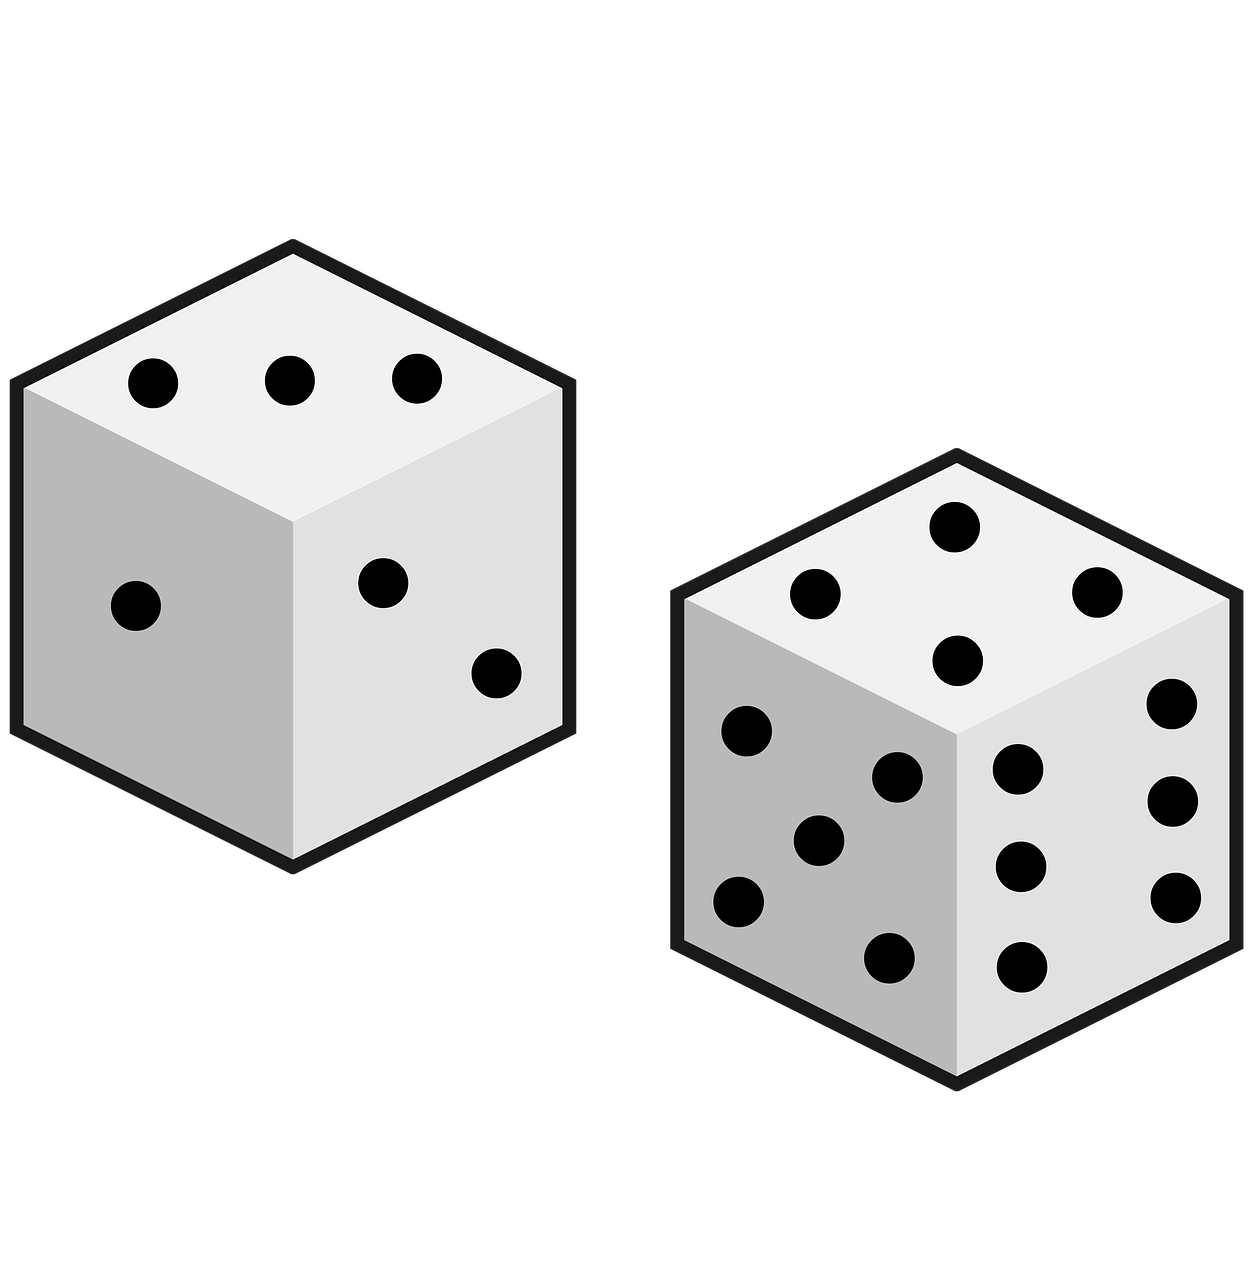 die dice games free photo